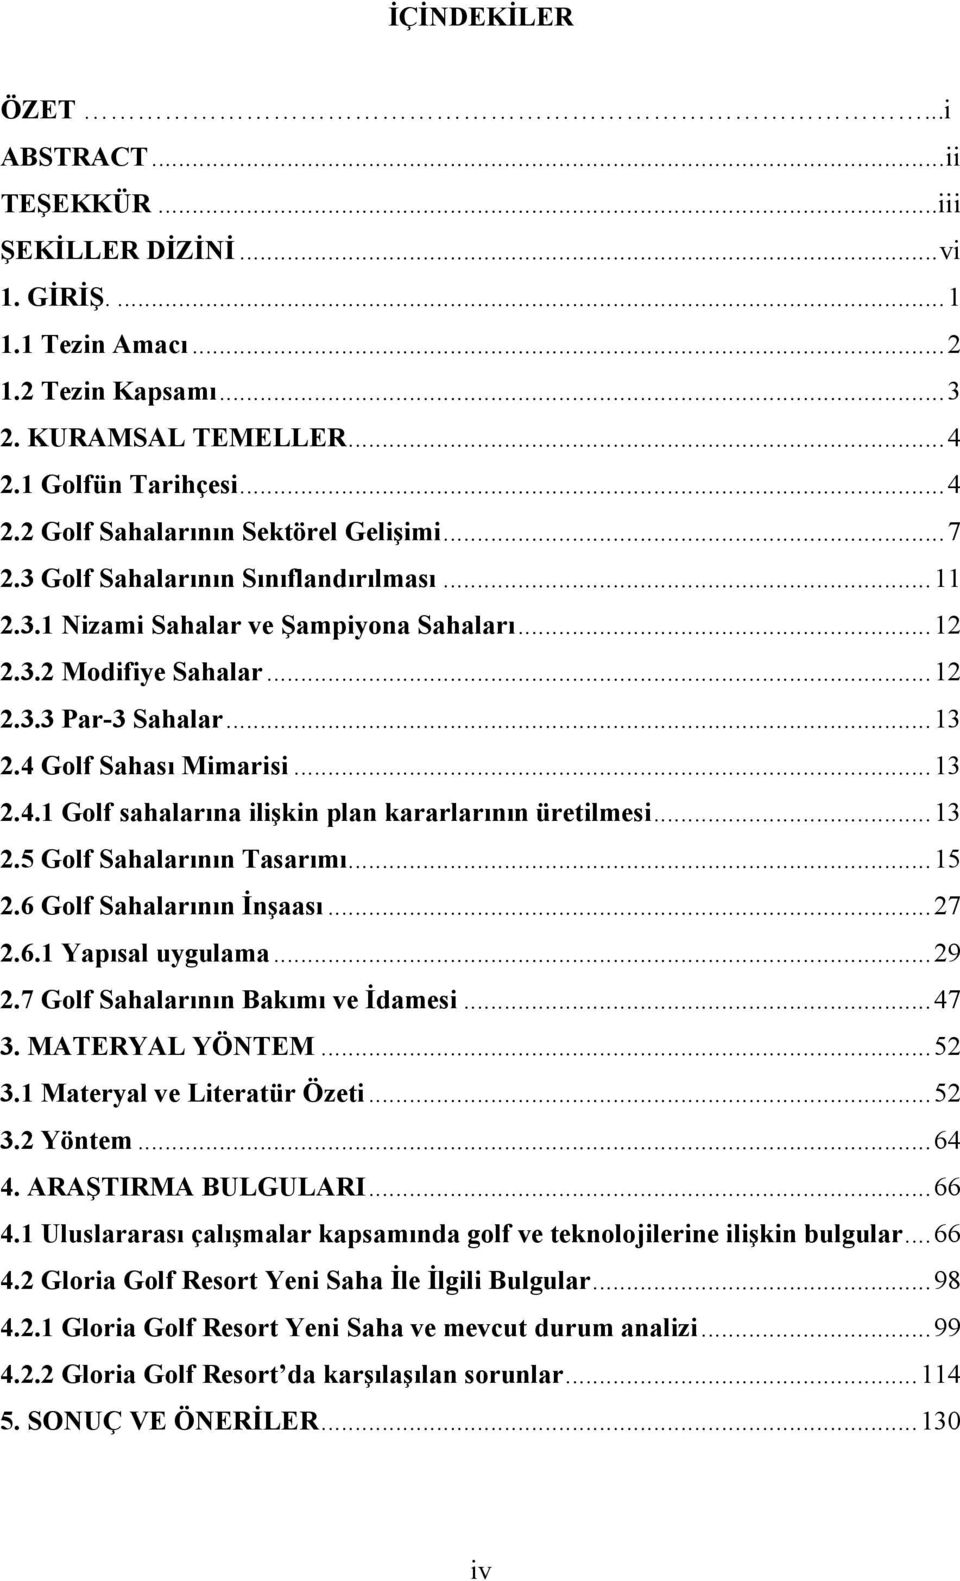 Golf Sahası Mimarisi... 13 2.4.1 Golf sahalarına ilişkin plan kararlarının üretilmesi... 13 2.5 Golf Sahalarının Tasarımı... 15 2.6 Golf Sahalarının İnşaası... 27 2.6.1 Yapısal uygulama... 29 2.